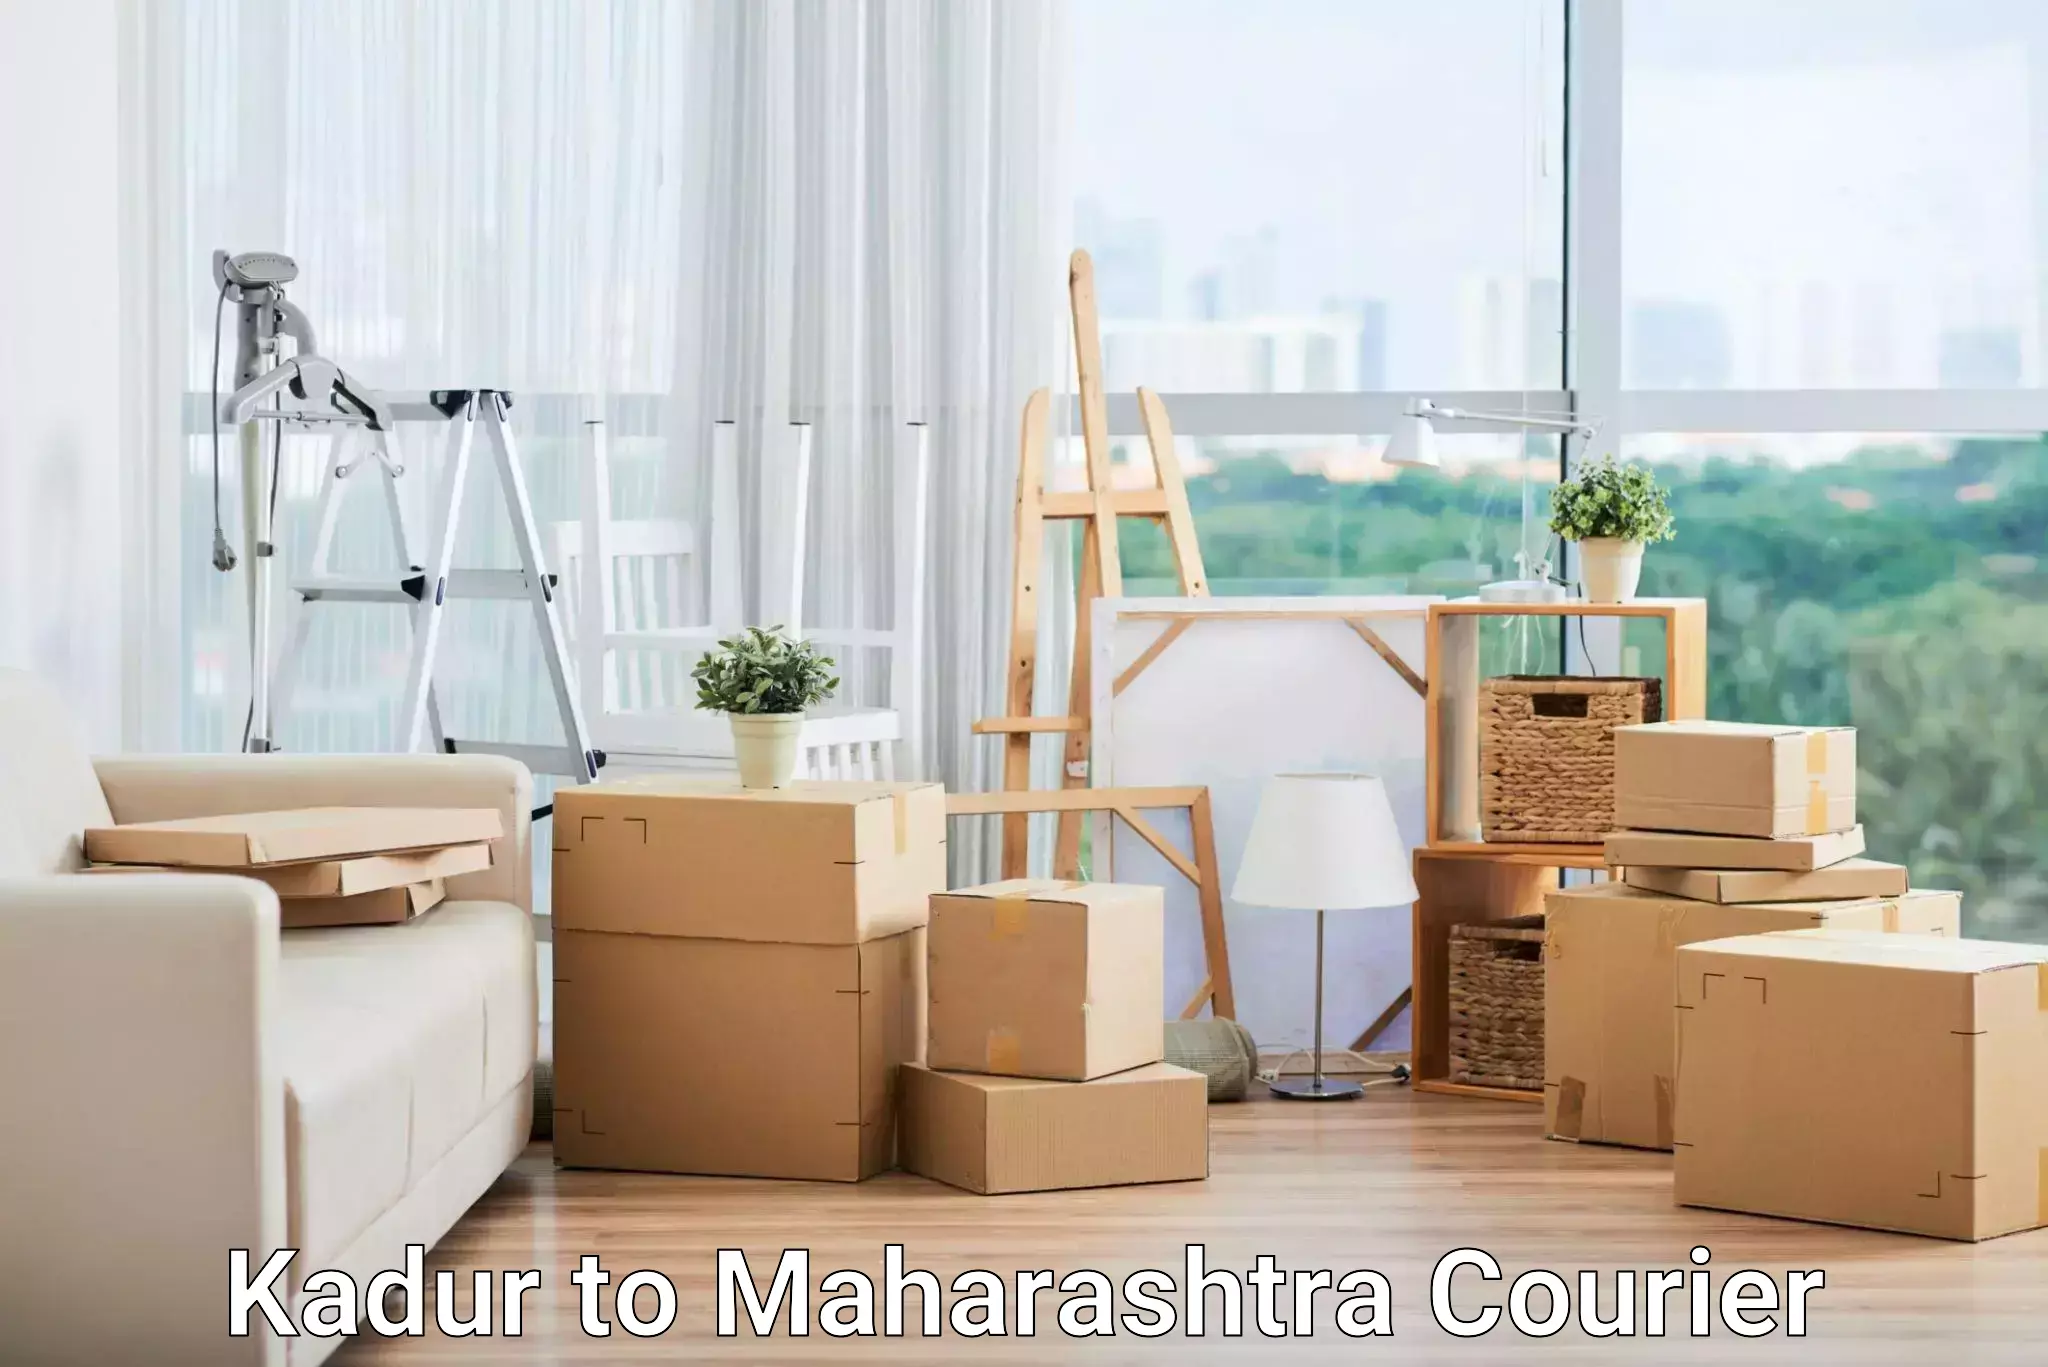 Express courier facilities Kadur to Maharashtra